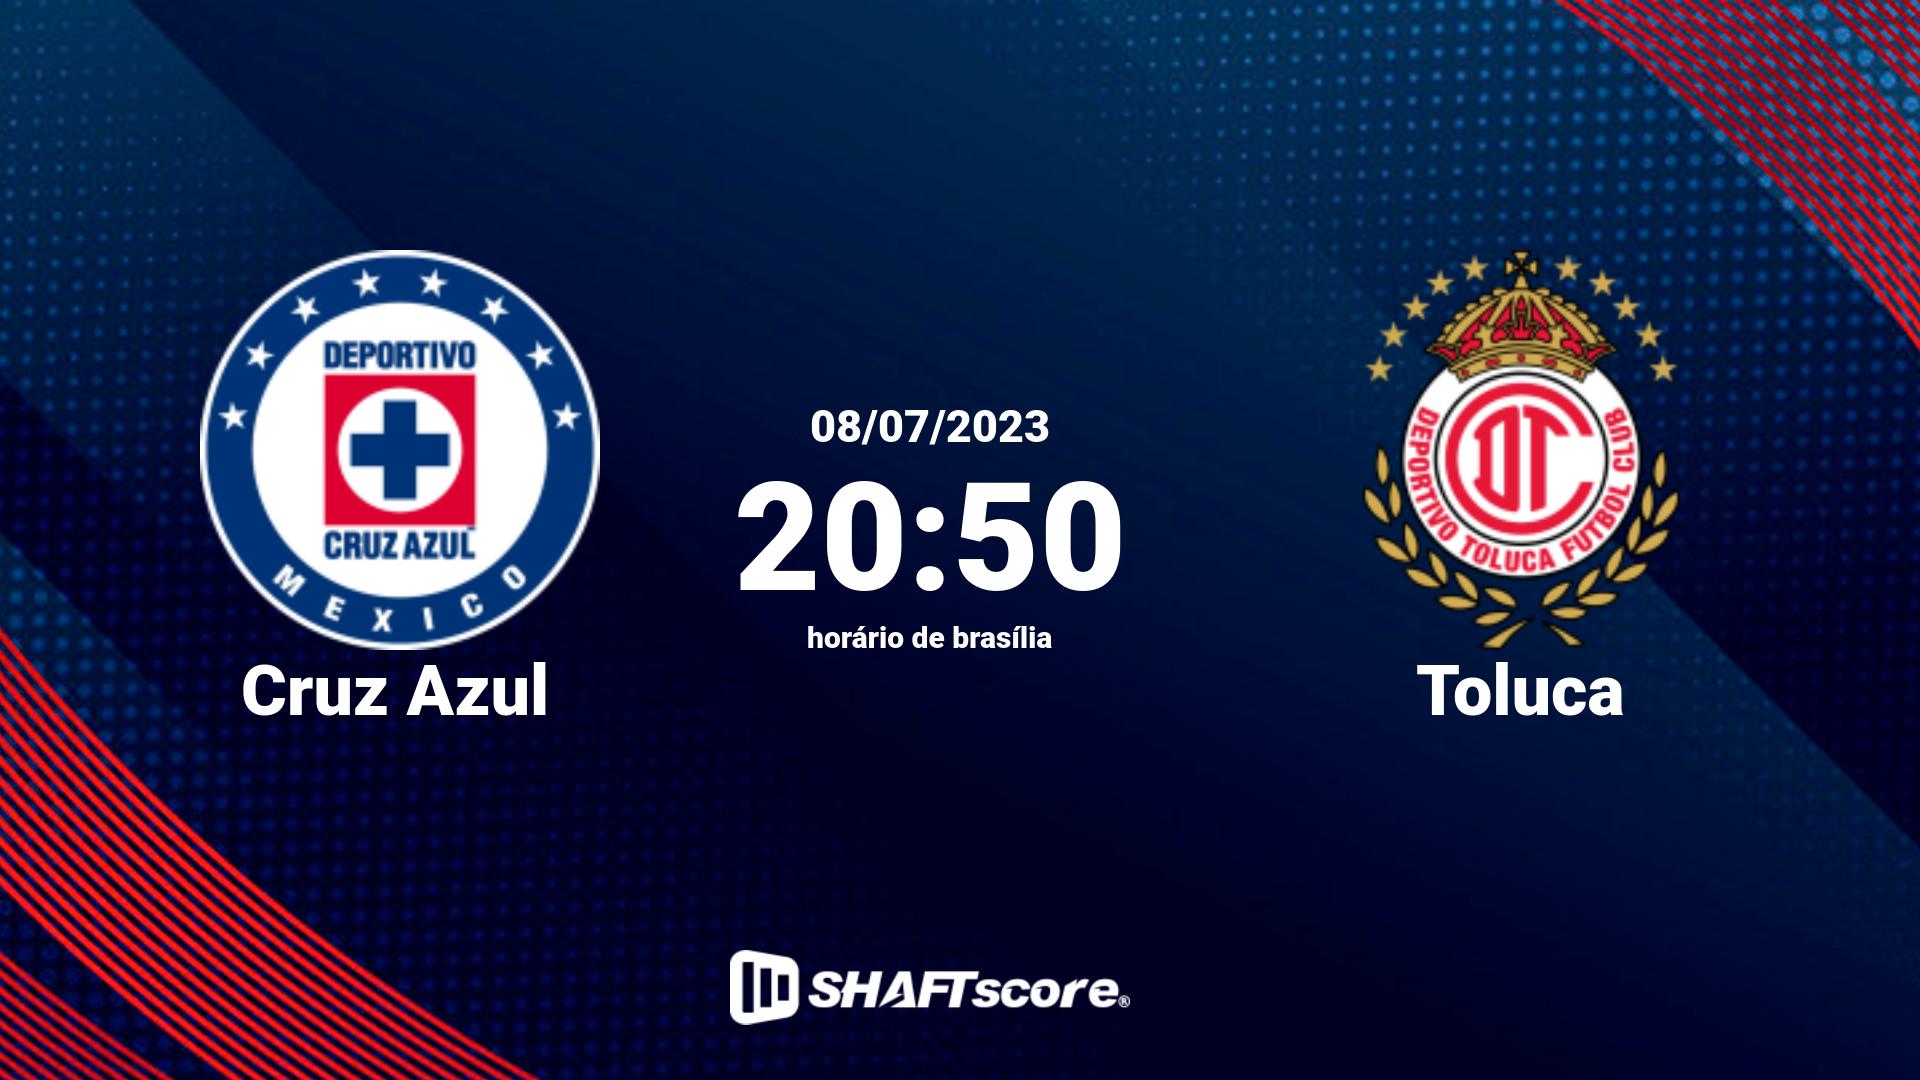 Estatísticas do jogo Cruz Azul vs Toluca 08.07 20:50